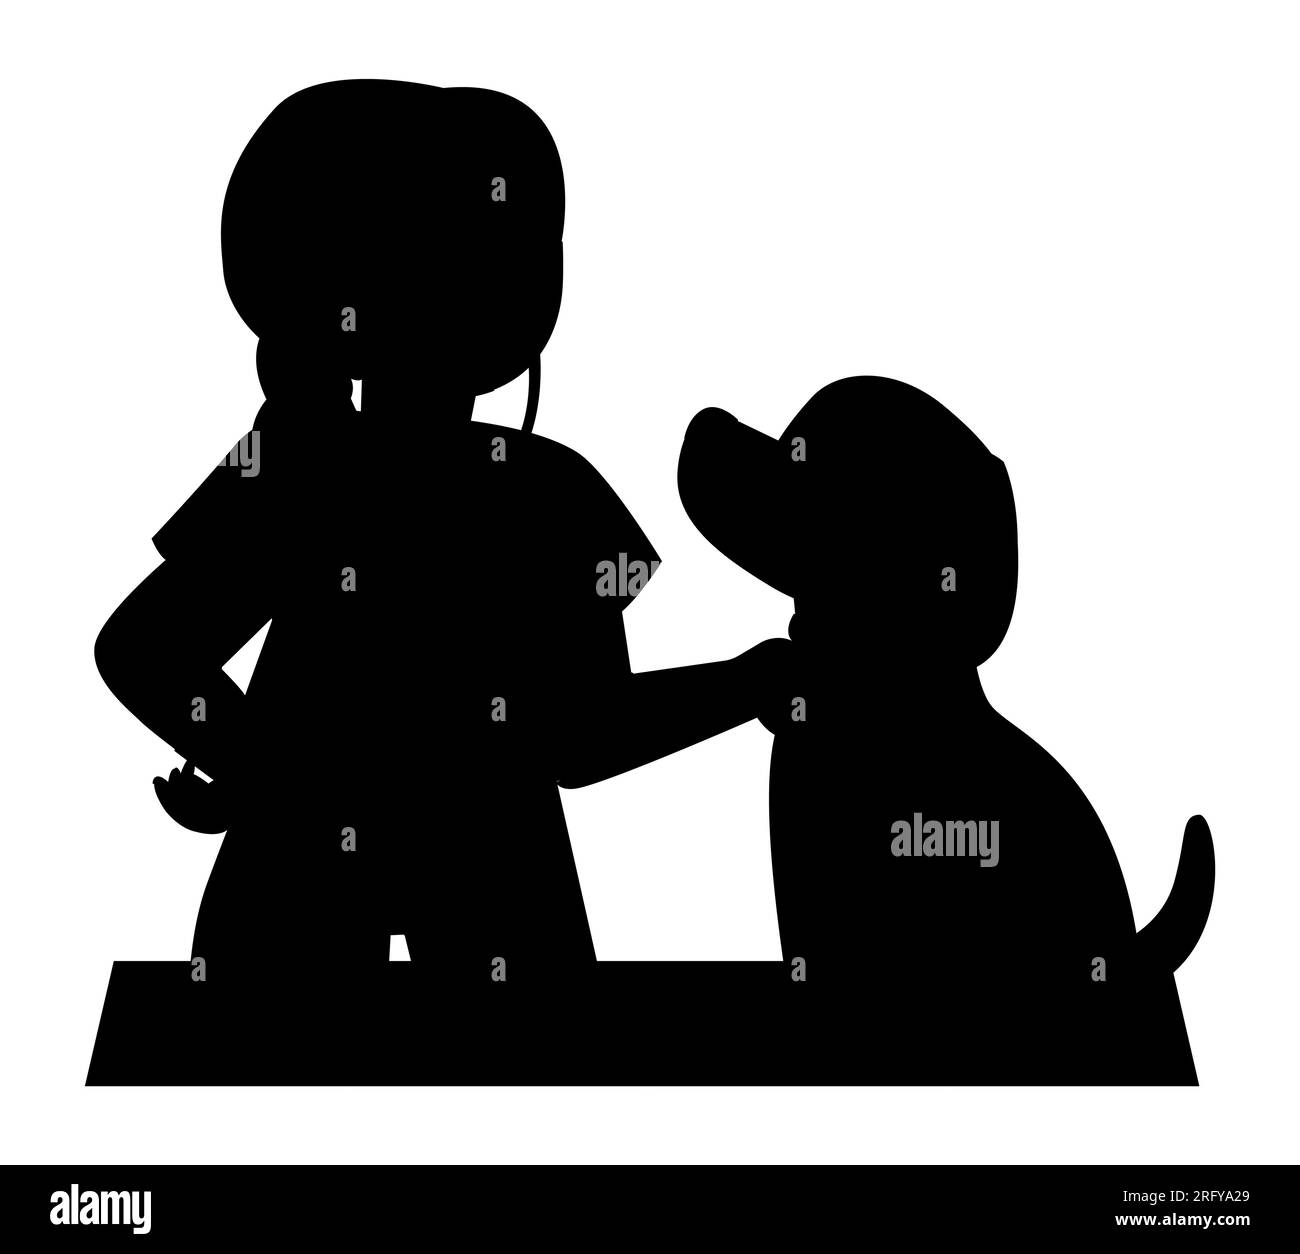 Schwarze Silhouette einer Karikaturfrau mit ihrem Hund, eine Frau streichelt ihren Hund, Alltagskonzept Vektor-Illustration isoliert auf weißem Hintergrund mit c Stock Vektor